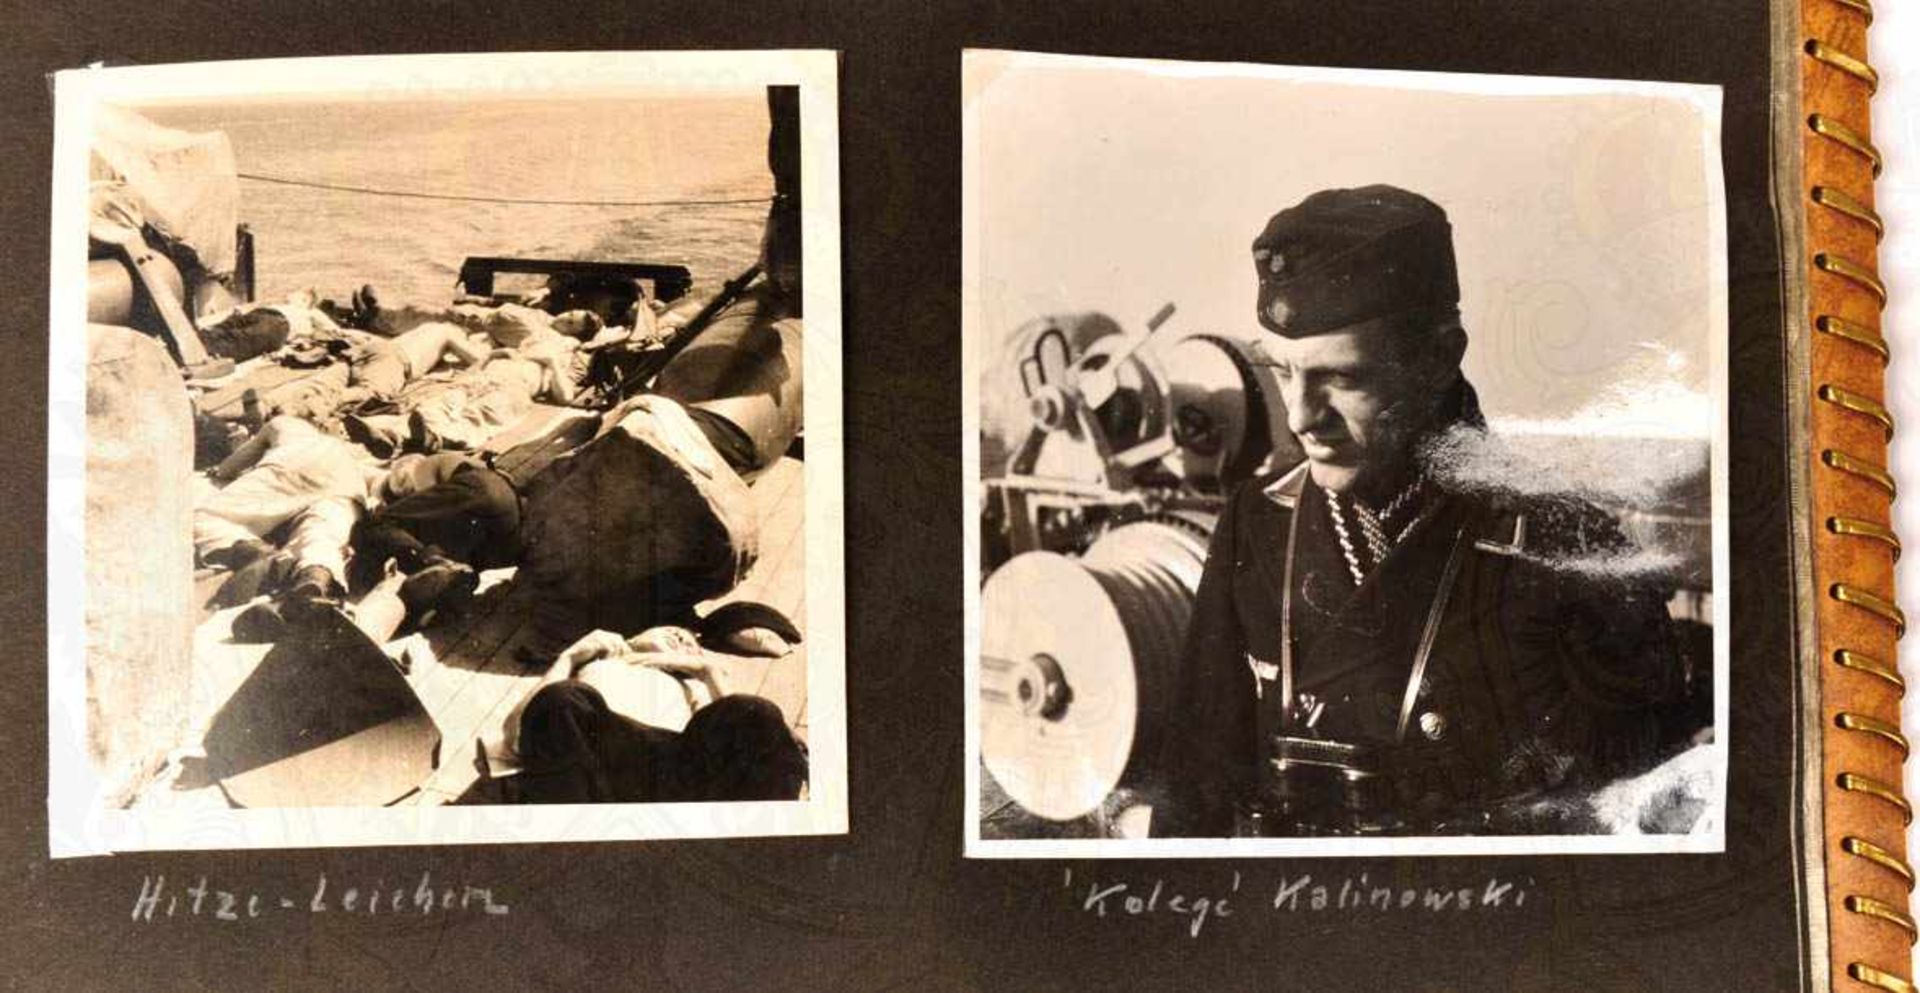 FOTOALBUM EINES OBERMAATEN, auf Minensuchboot M 29 (3. Minensuchflottille), ca. 85 Aufnahmen, tls. - Image 10 of 10